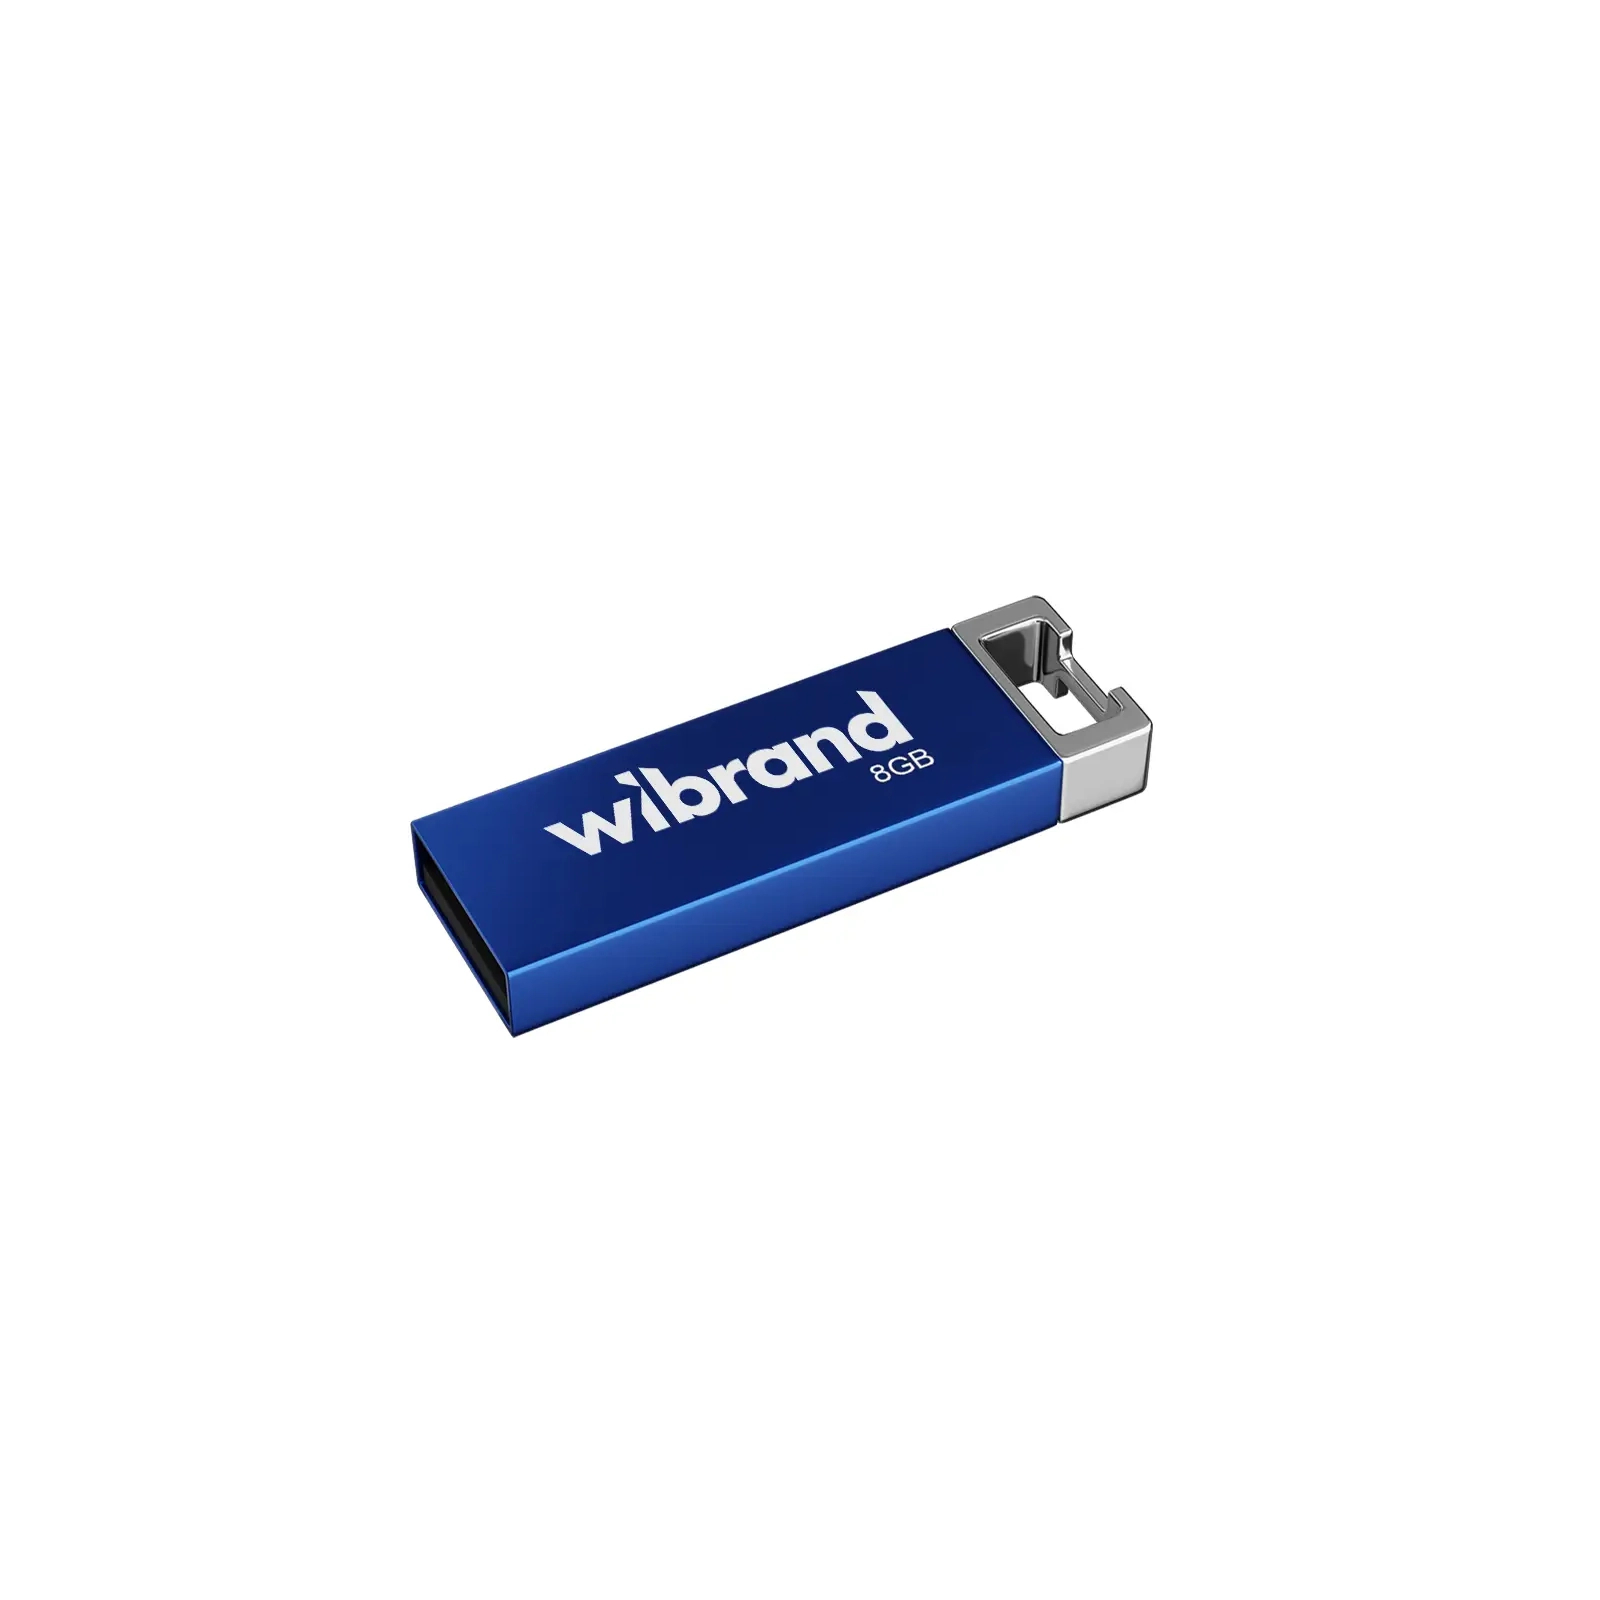 USB флеш накопитель Wibrand 64GB Chameleon Blue USB 2.0 (WI2.0/CH64U6U)